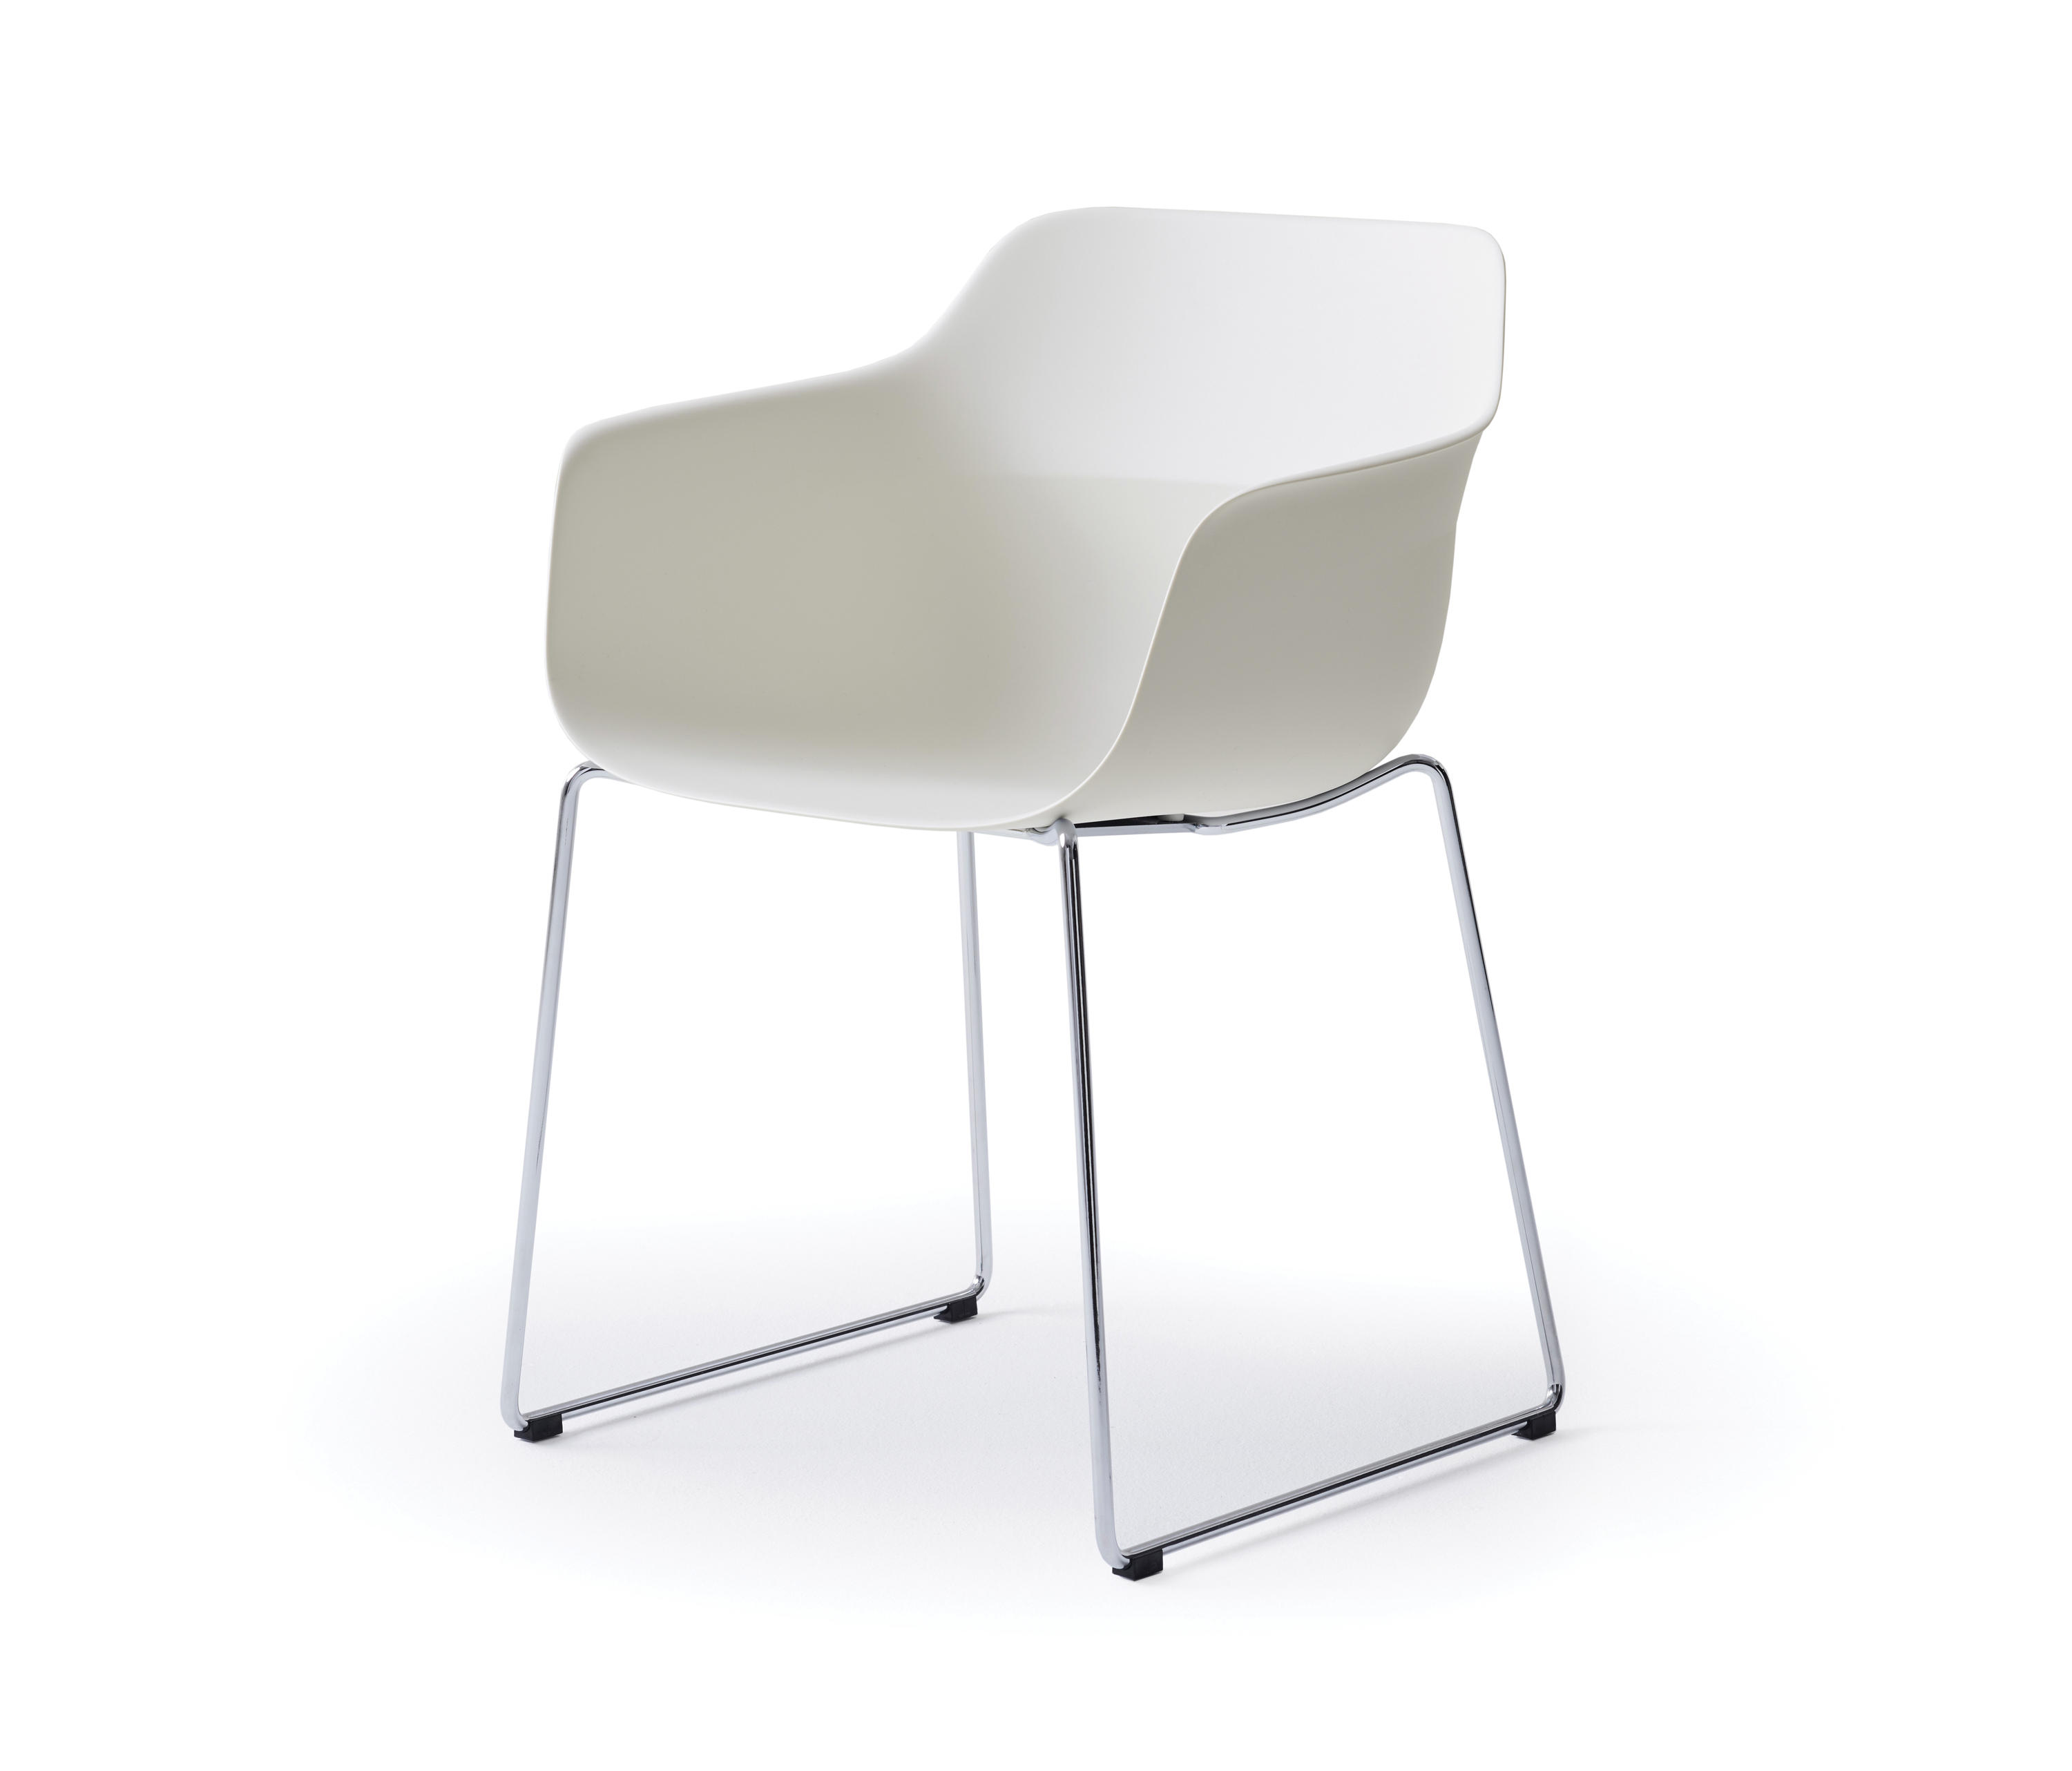 Codi Chair by Archirivolto for Davis Furniture